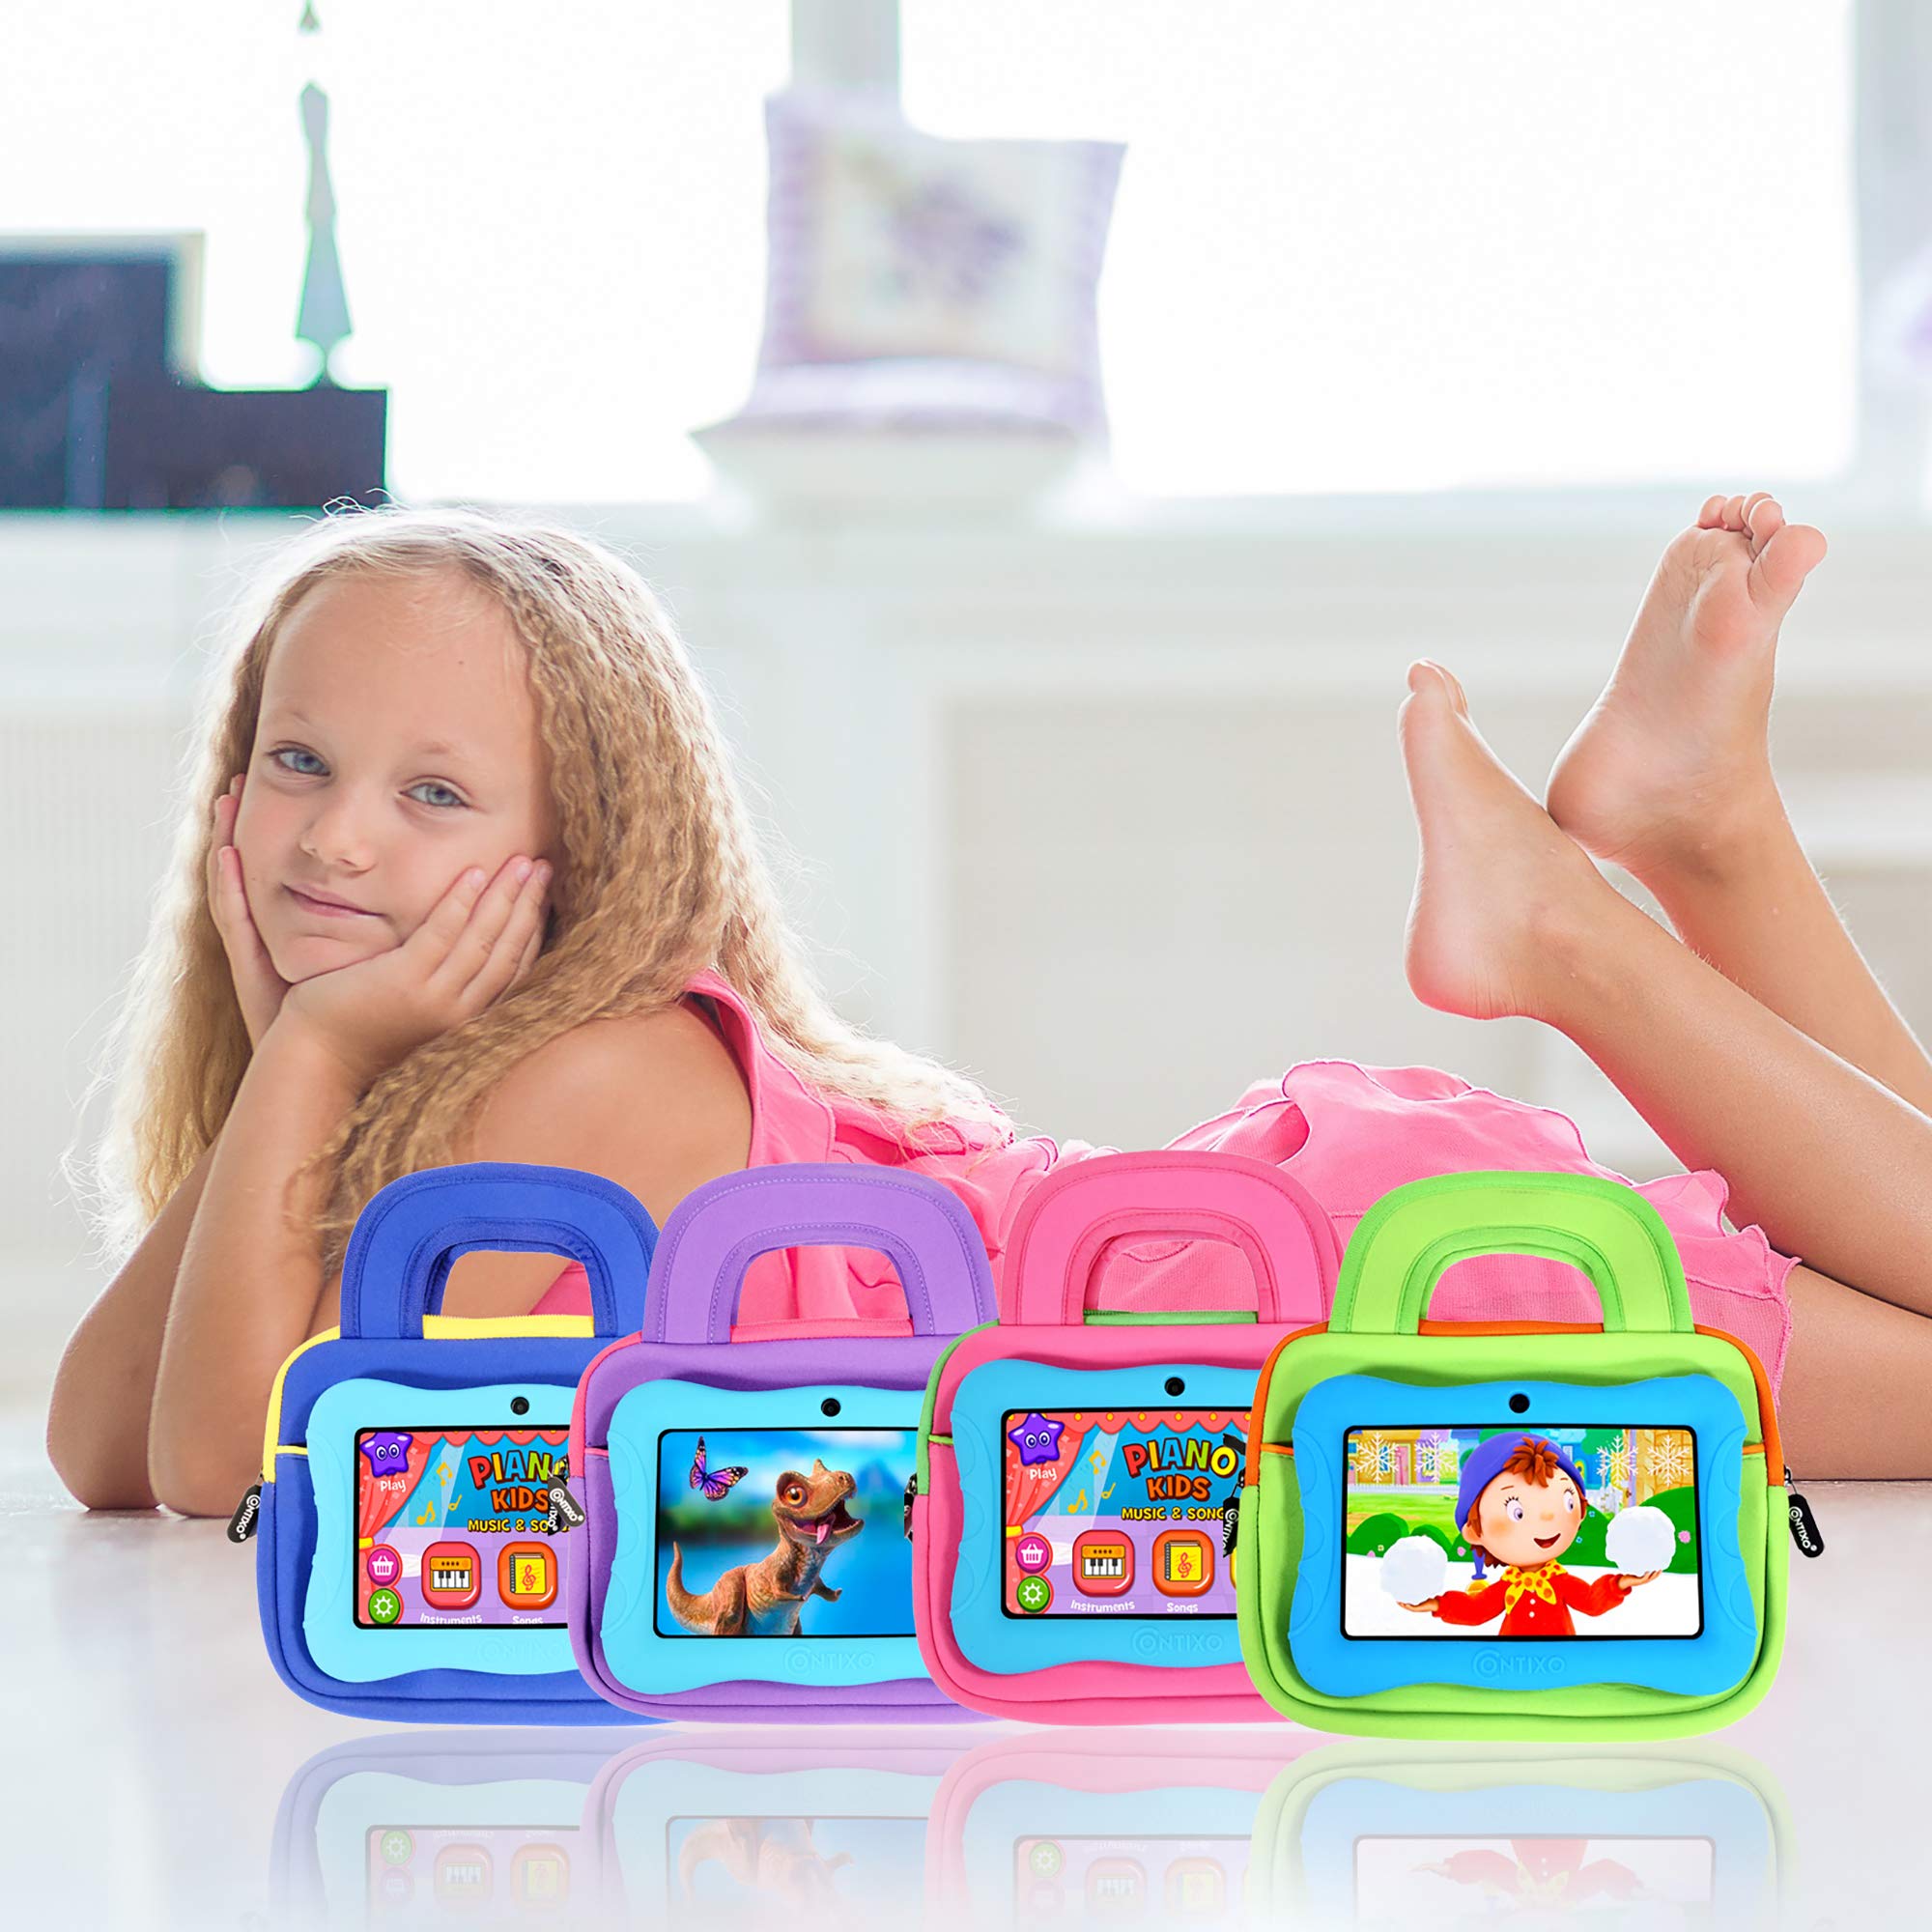 Contixo Kids Tablet V10, 7-inch HD, Ages 3-7, Toddler Tablet with Sleeve Bag Bundle, Learning Tablet Set for Children - Blue